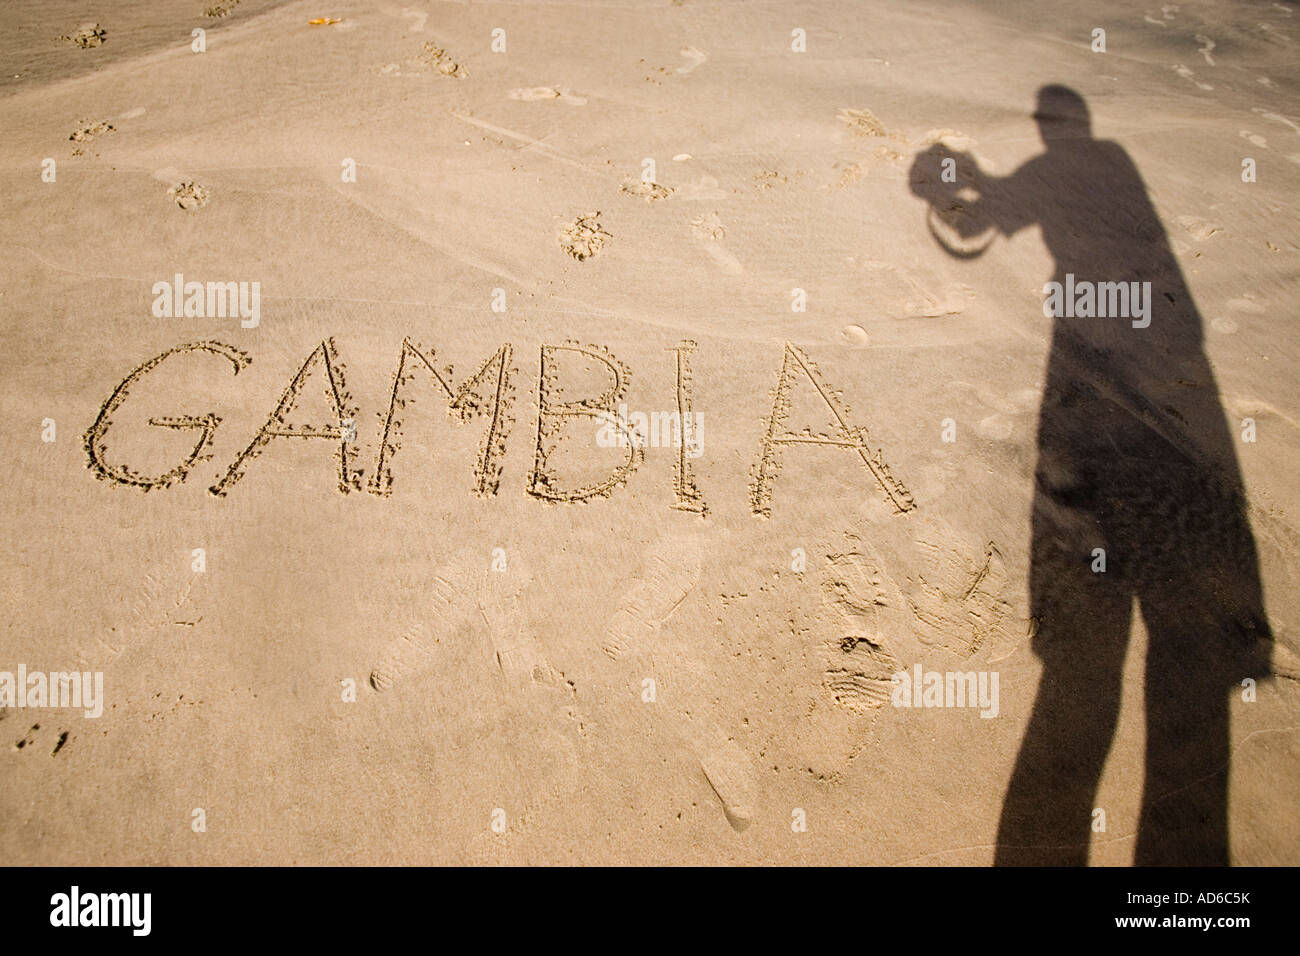 Schatten zeigt Fotograf macht ein Bild geschrieben in Sandstrand Cape Point Bakau Gambia Gambia Stockfoto